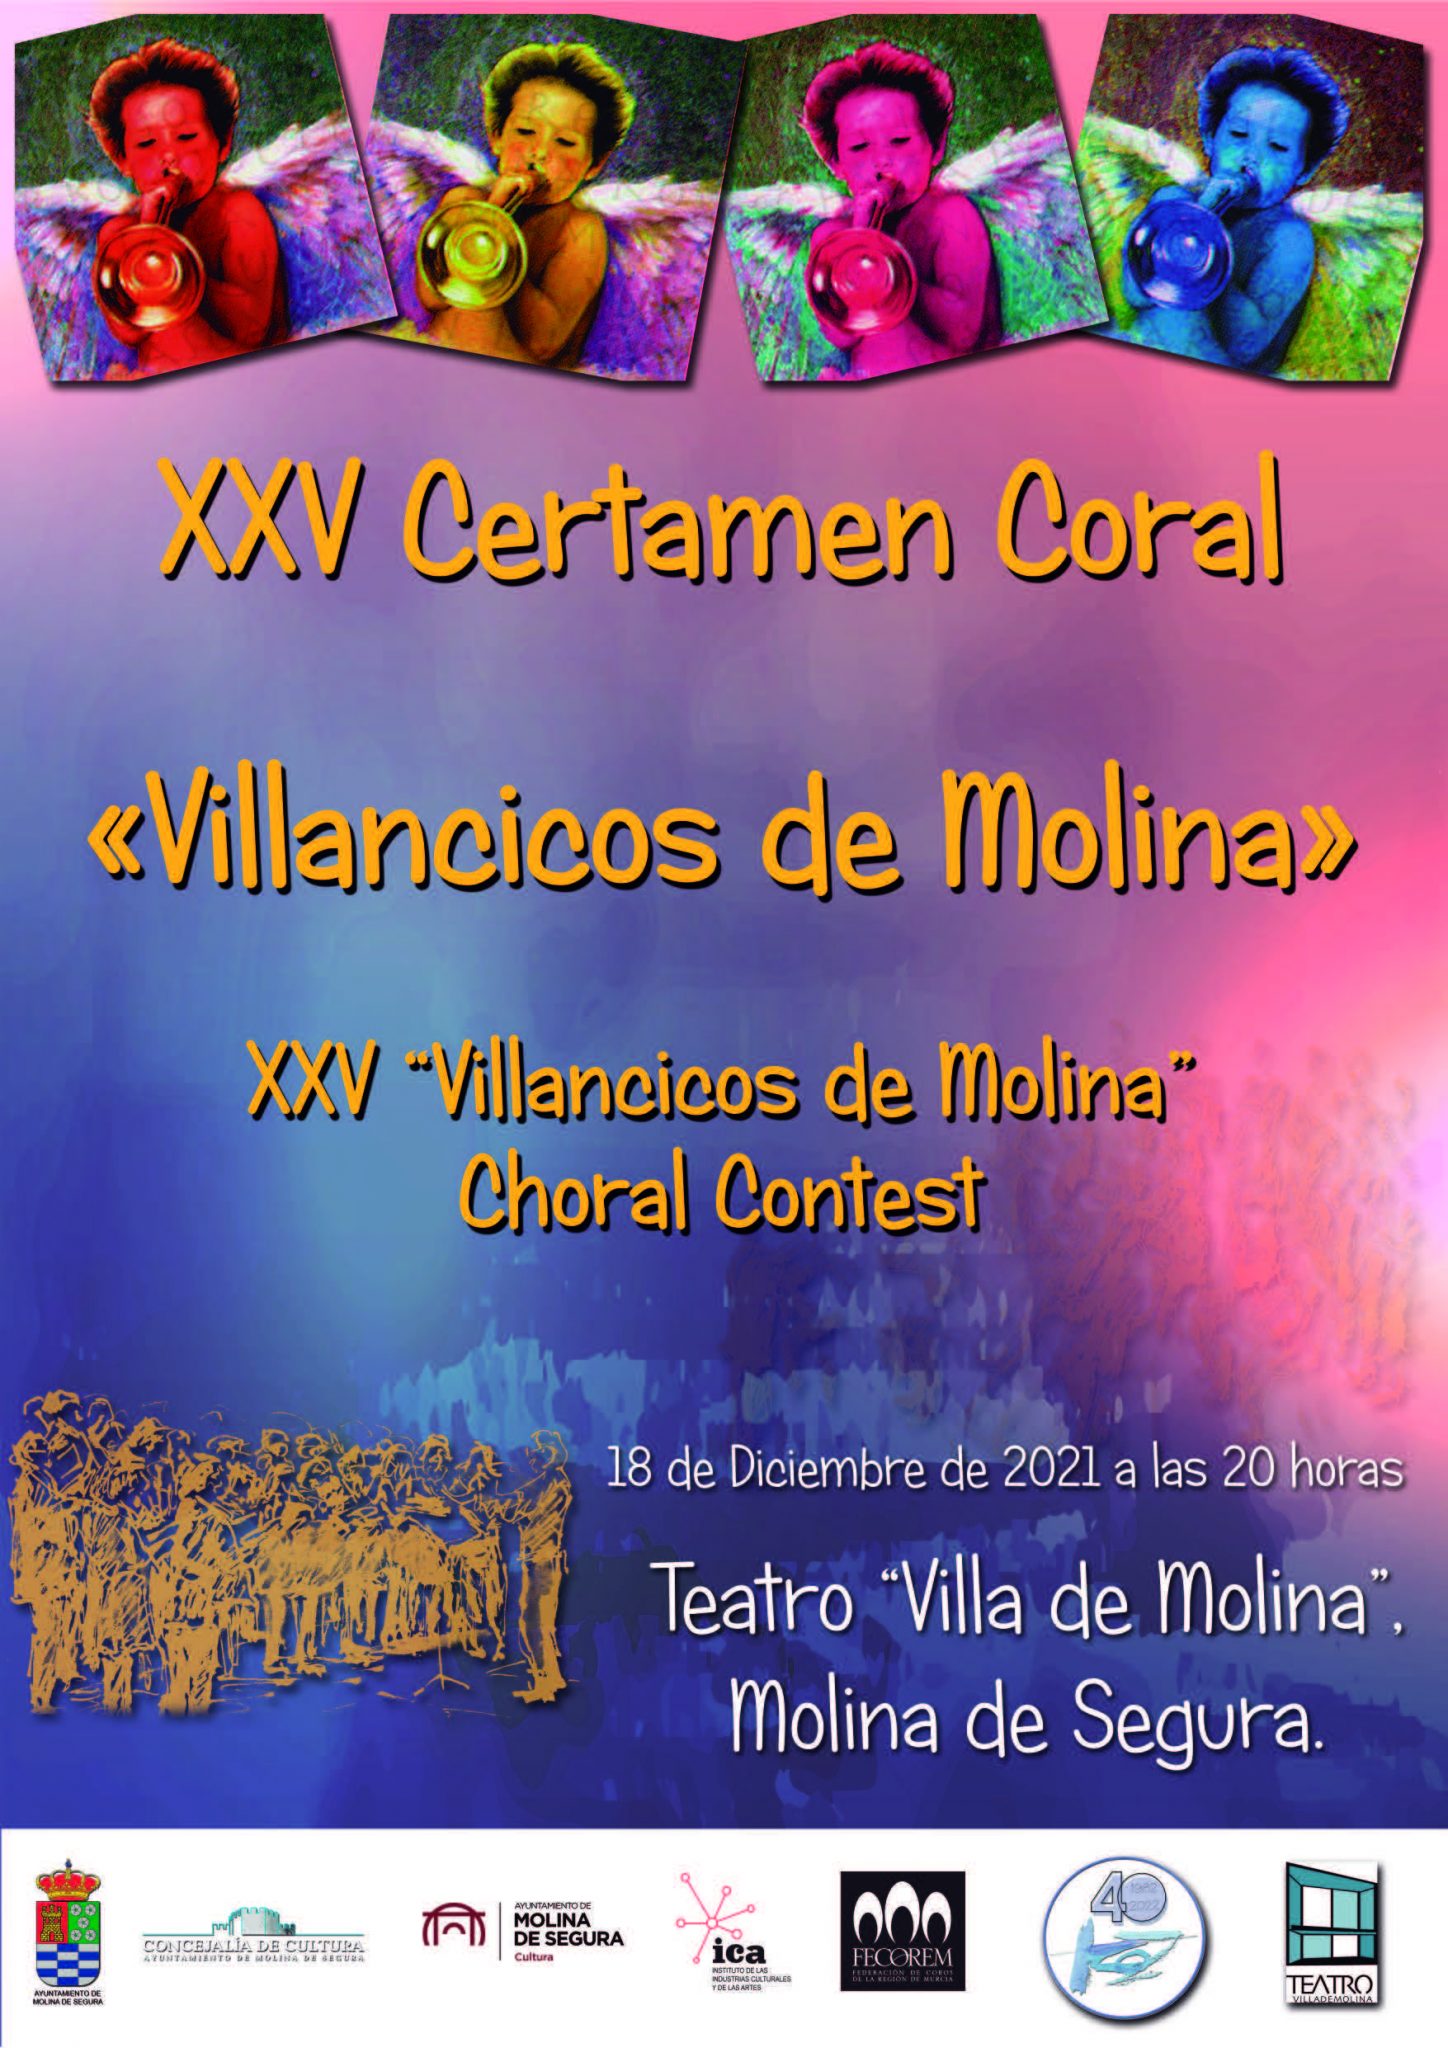 XXV Certamen Coral “Villancicos de Molina”